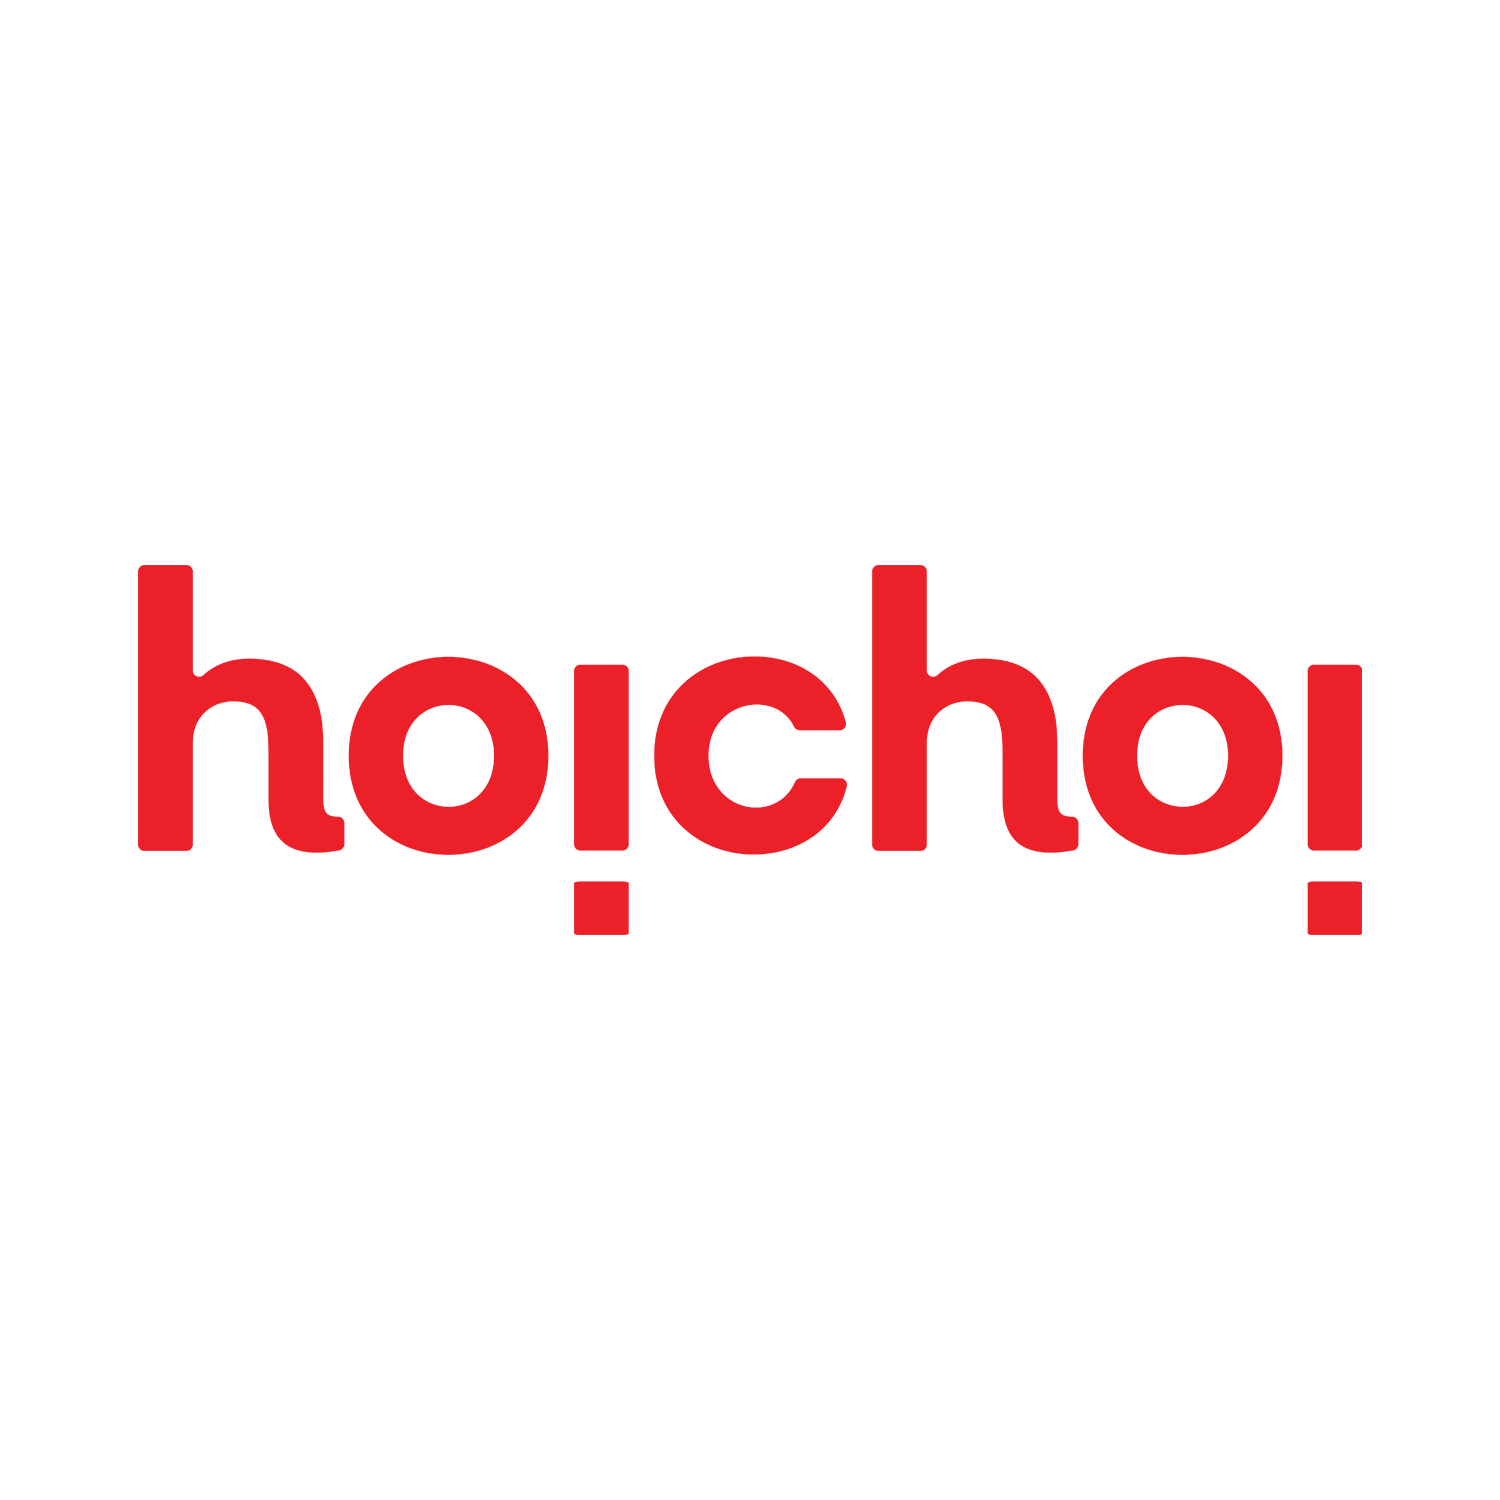 Hoichoi Logo Transparent Image